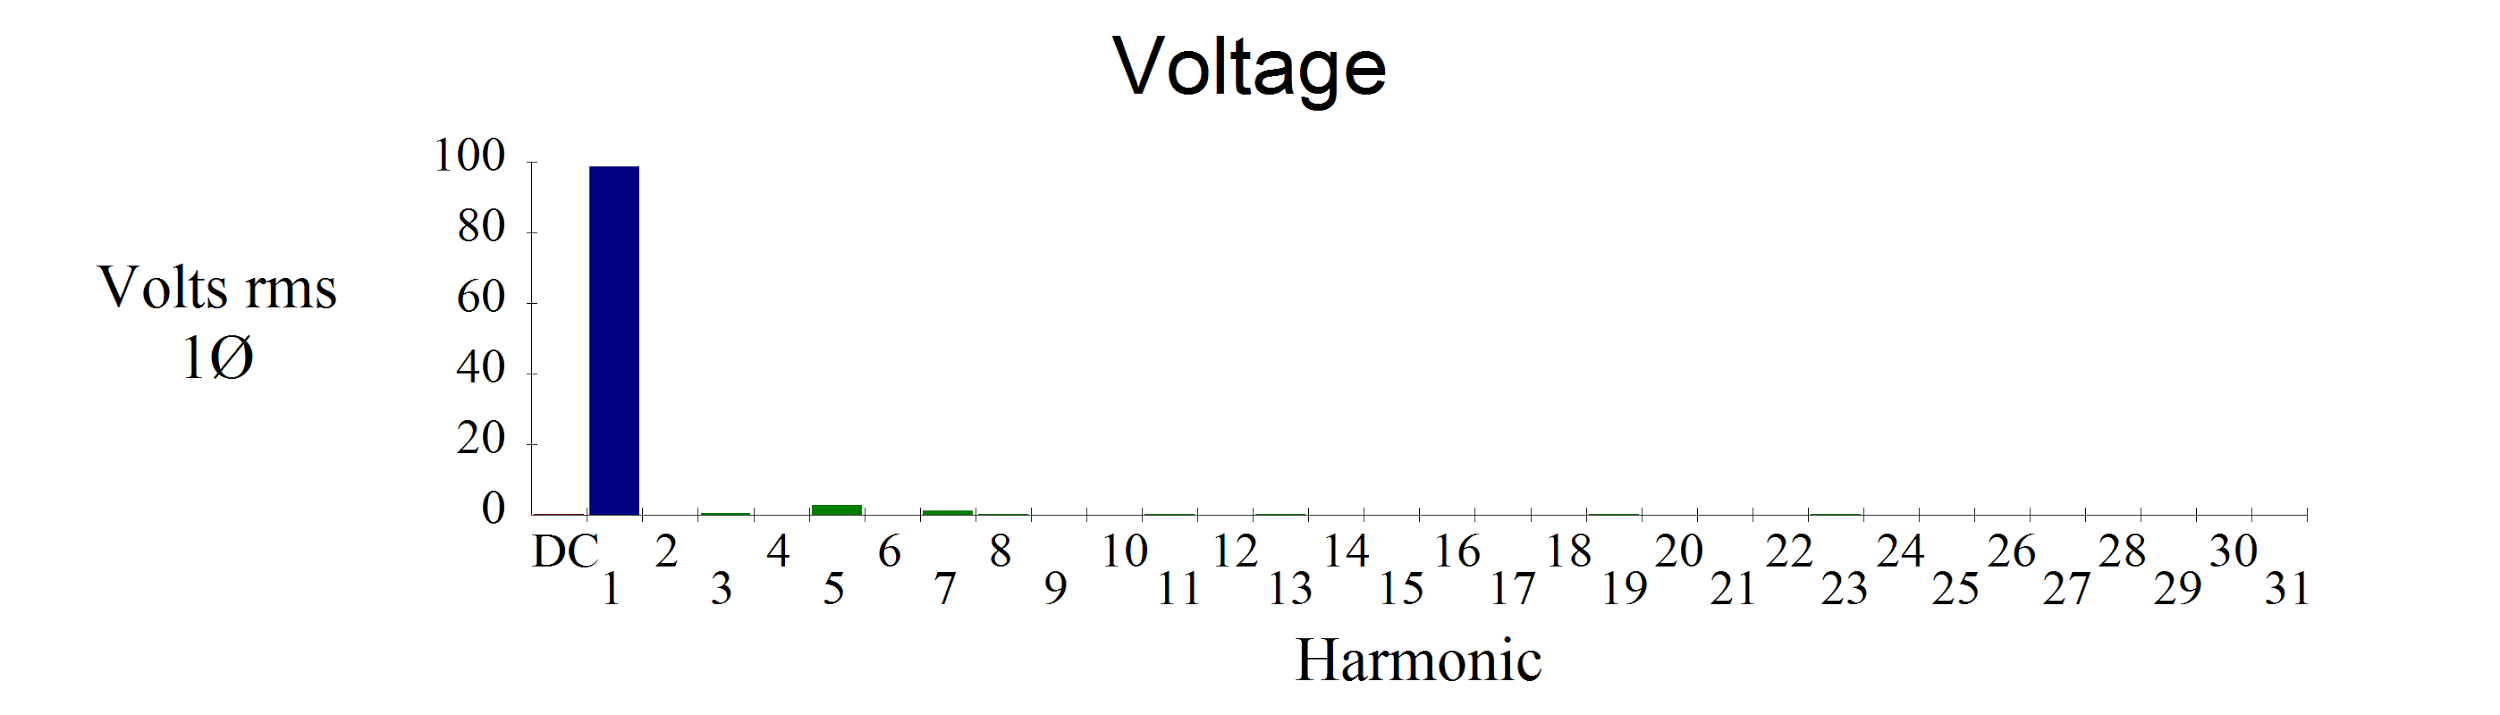 Гармонический спектр напряжений высоковольтной линии 10 кВ «Лепетан»